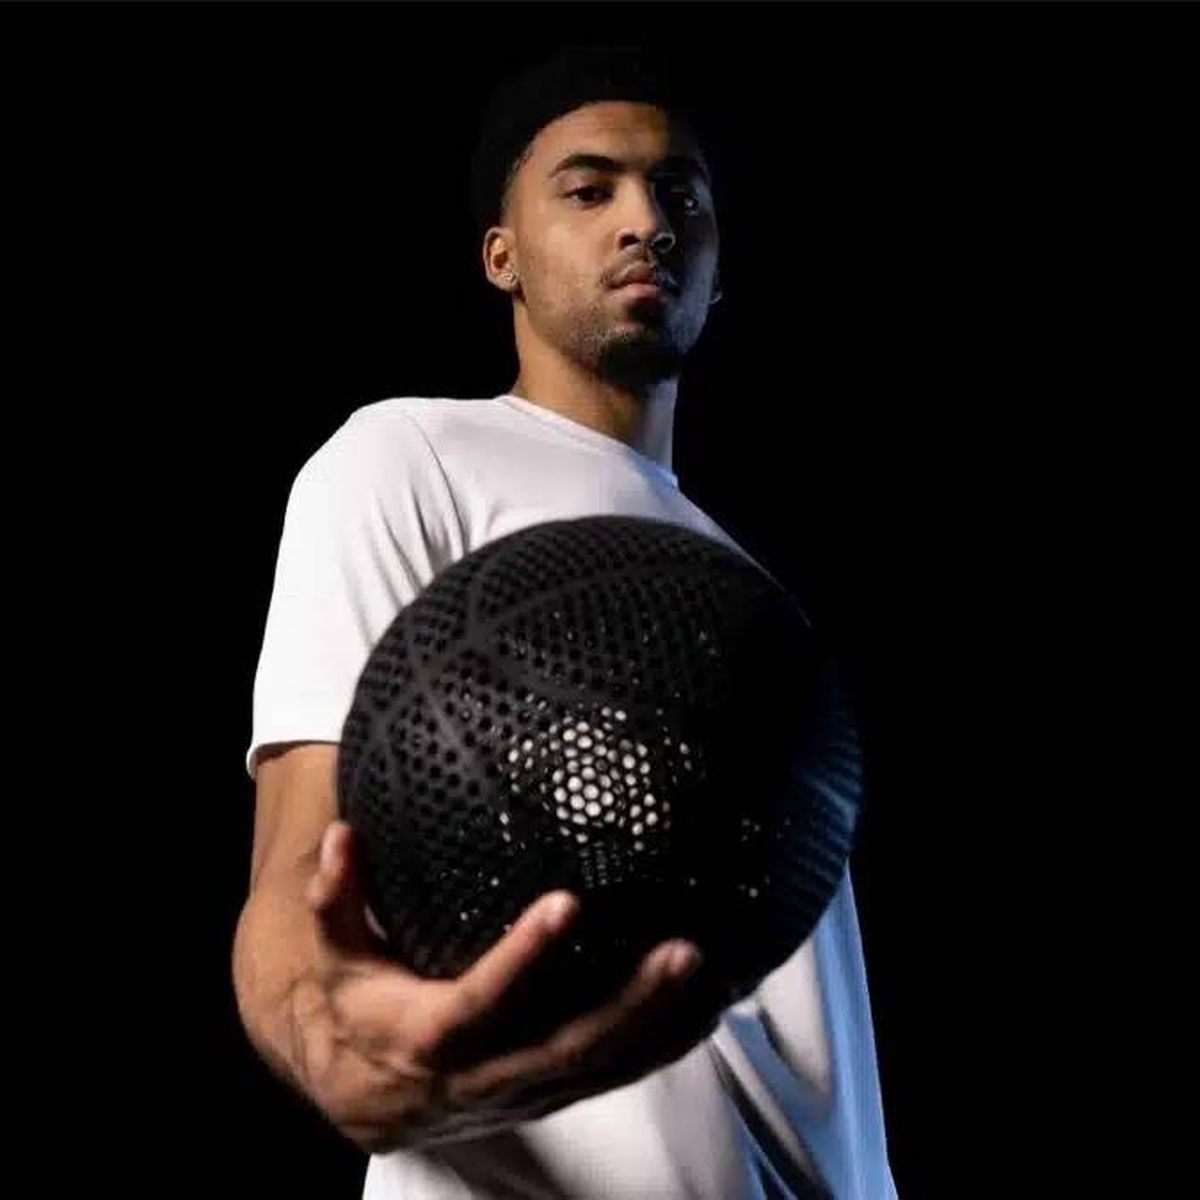 La nueva pelota de baloncesto que está probando la NBA no necesita aire